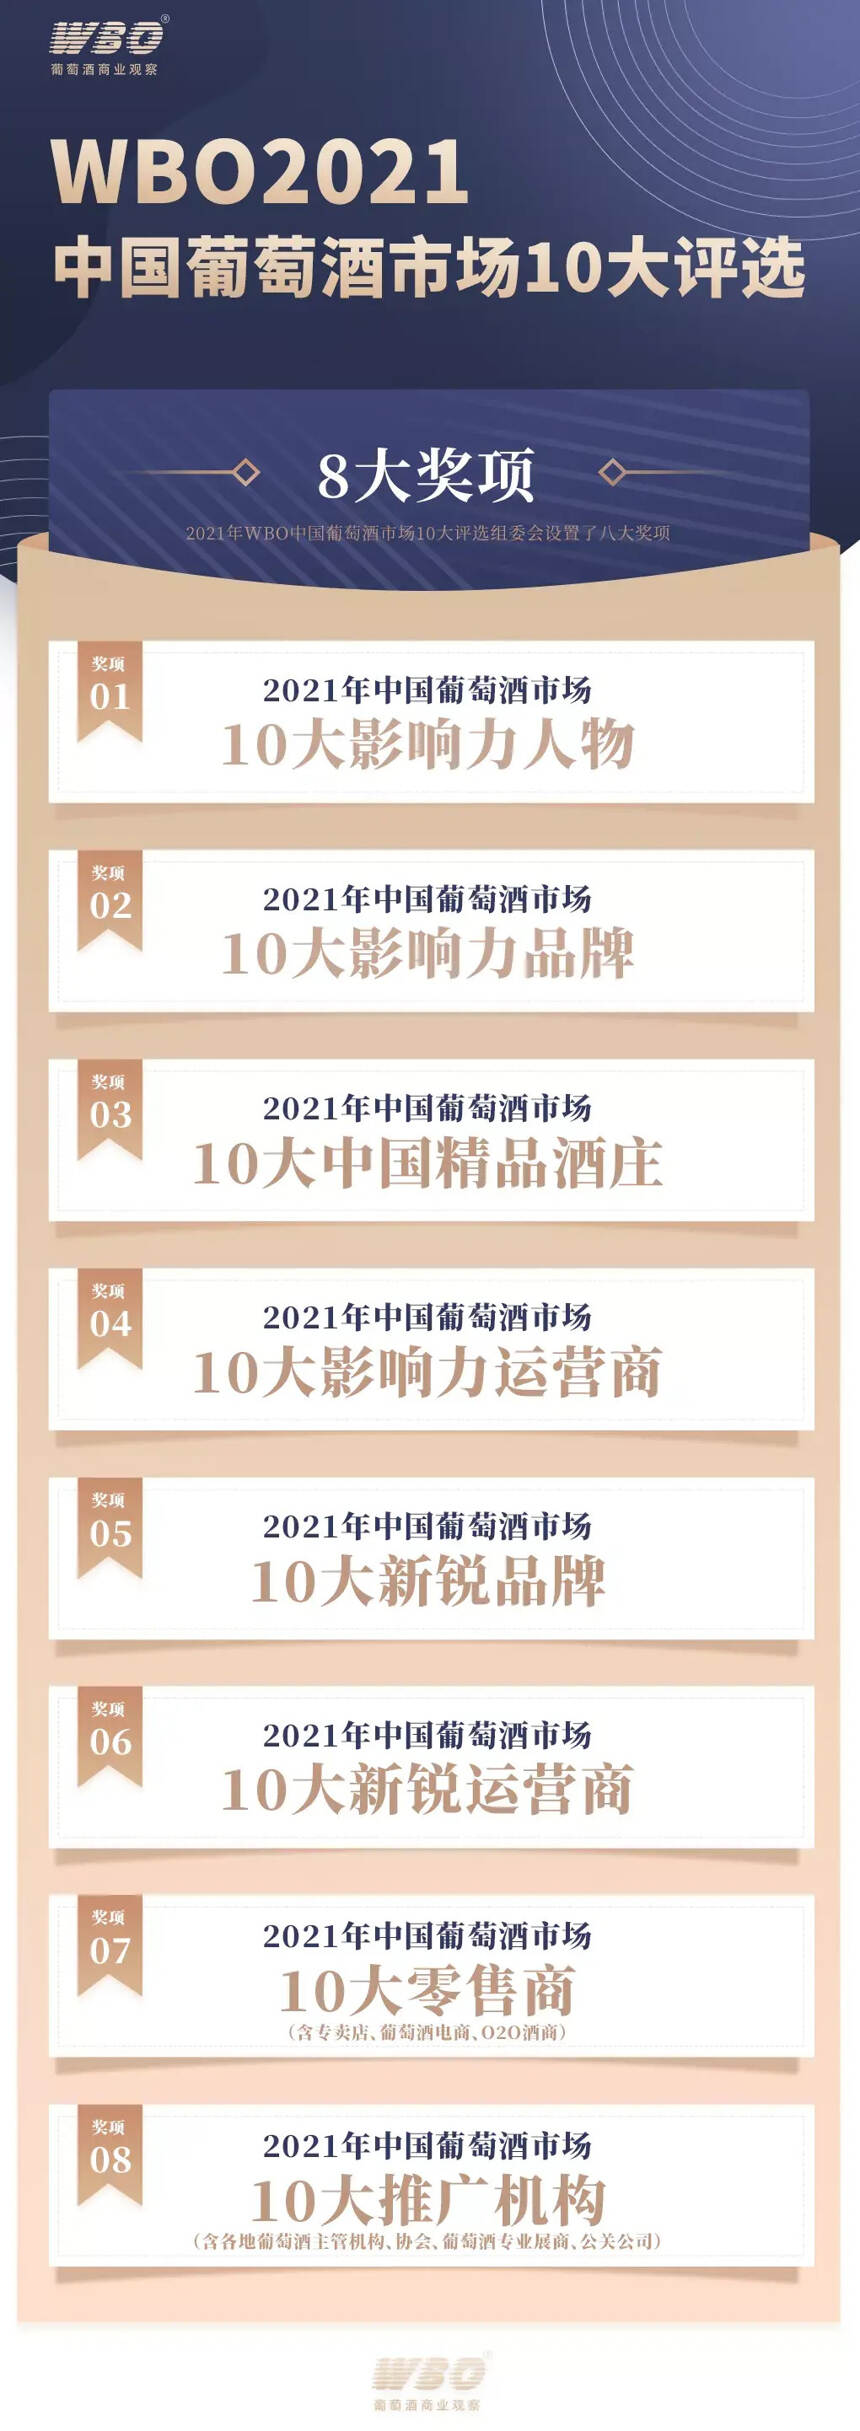 WBO 2021中国葡萄酒市场10大评选启动